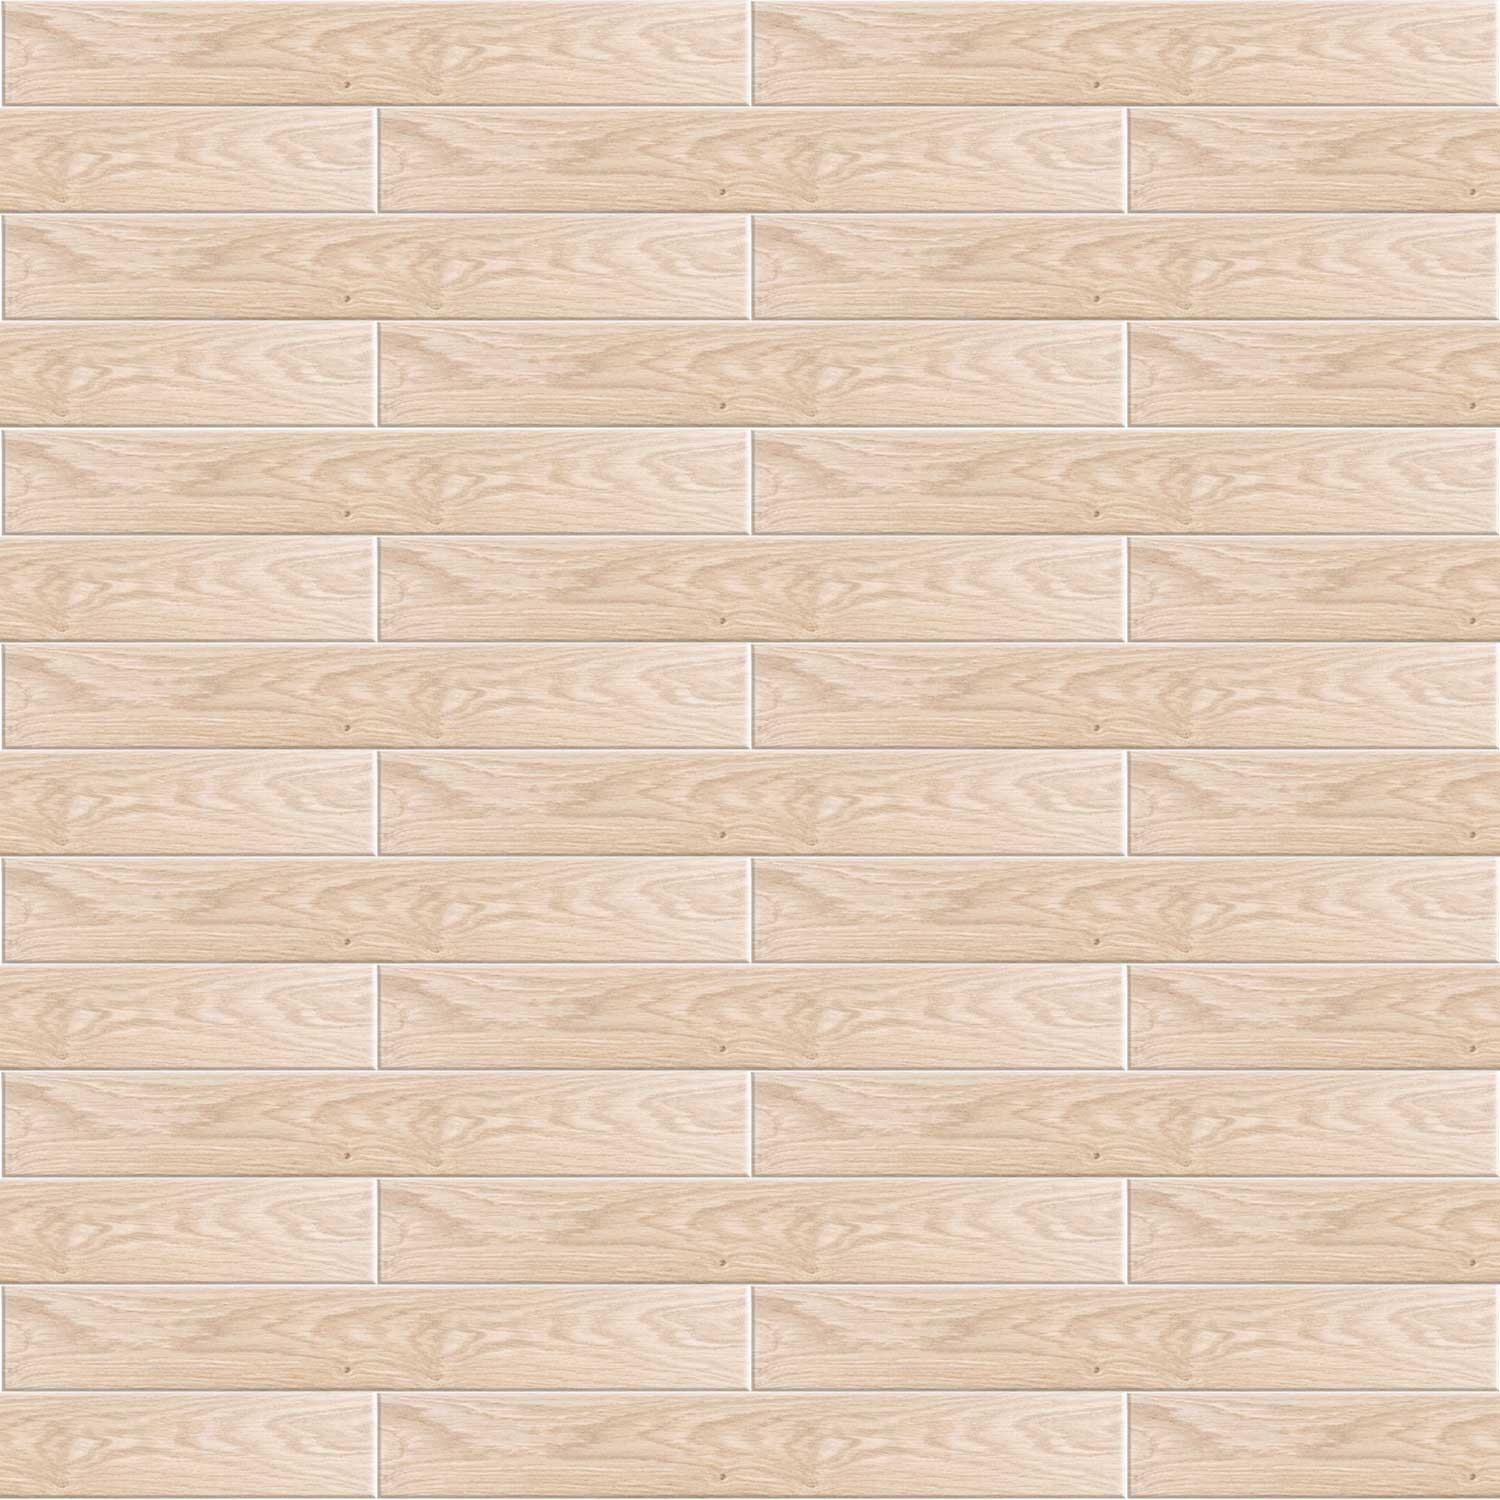 Forest Beige Porcelain Plank Tile Walls Floor R9 Wood Effect 100x700mm